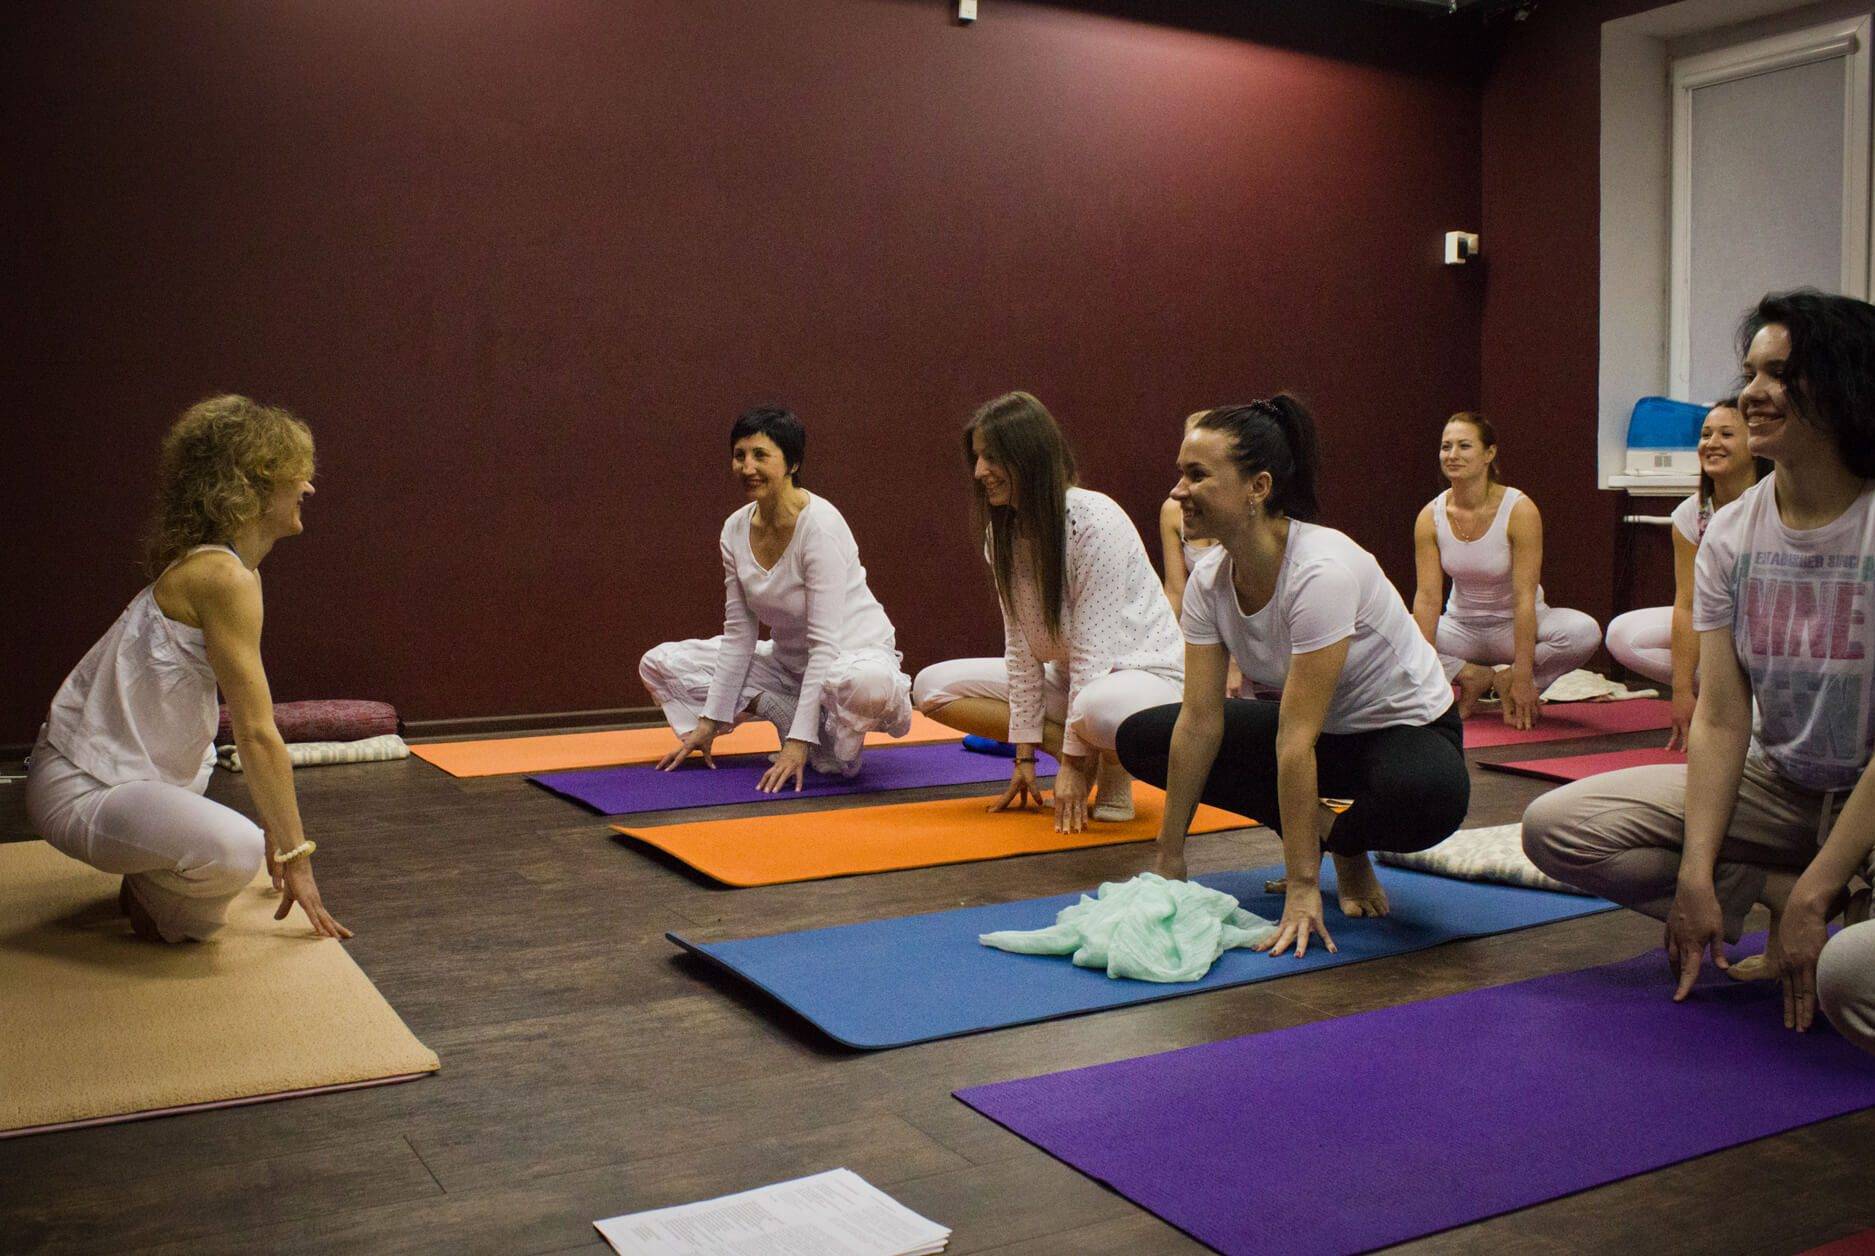 Преимущества кундалини йоги и медитации | школа йоги "венера"
преимущества кундалини йоги и медитации | школа йоги "венера"